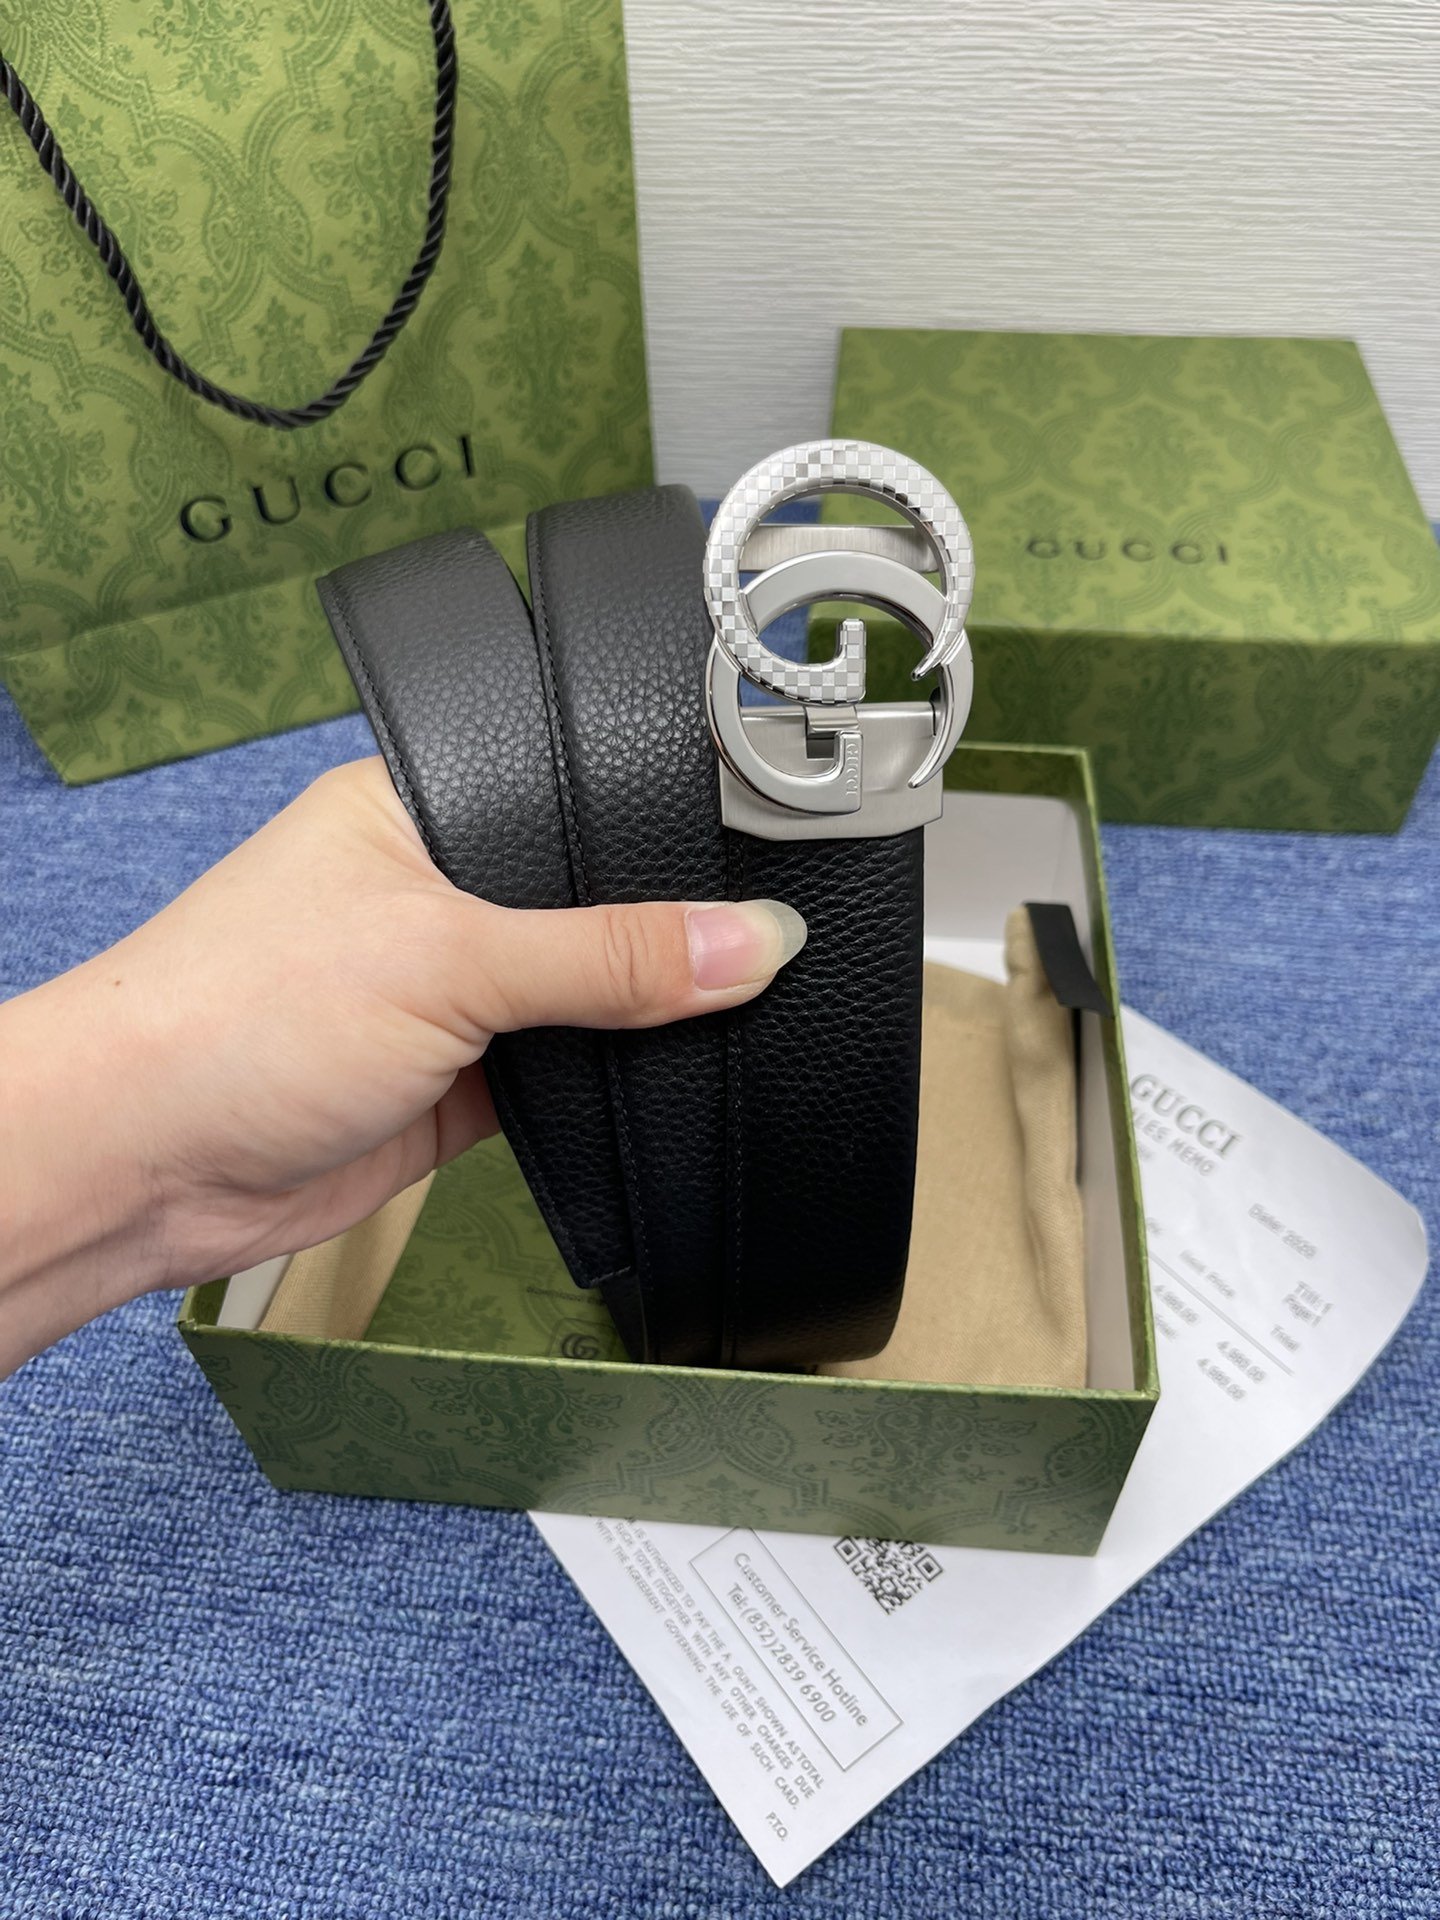 品牌古驰Gucci自动描述采用高级GucciSignature真皮精制而成触感厚实饰以双G商标带扣腰带为